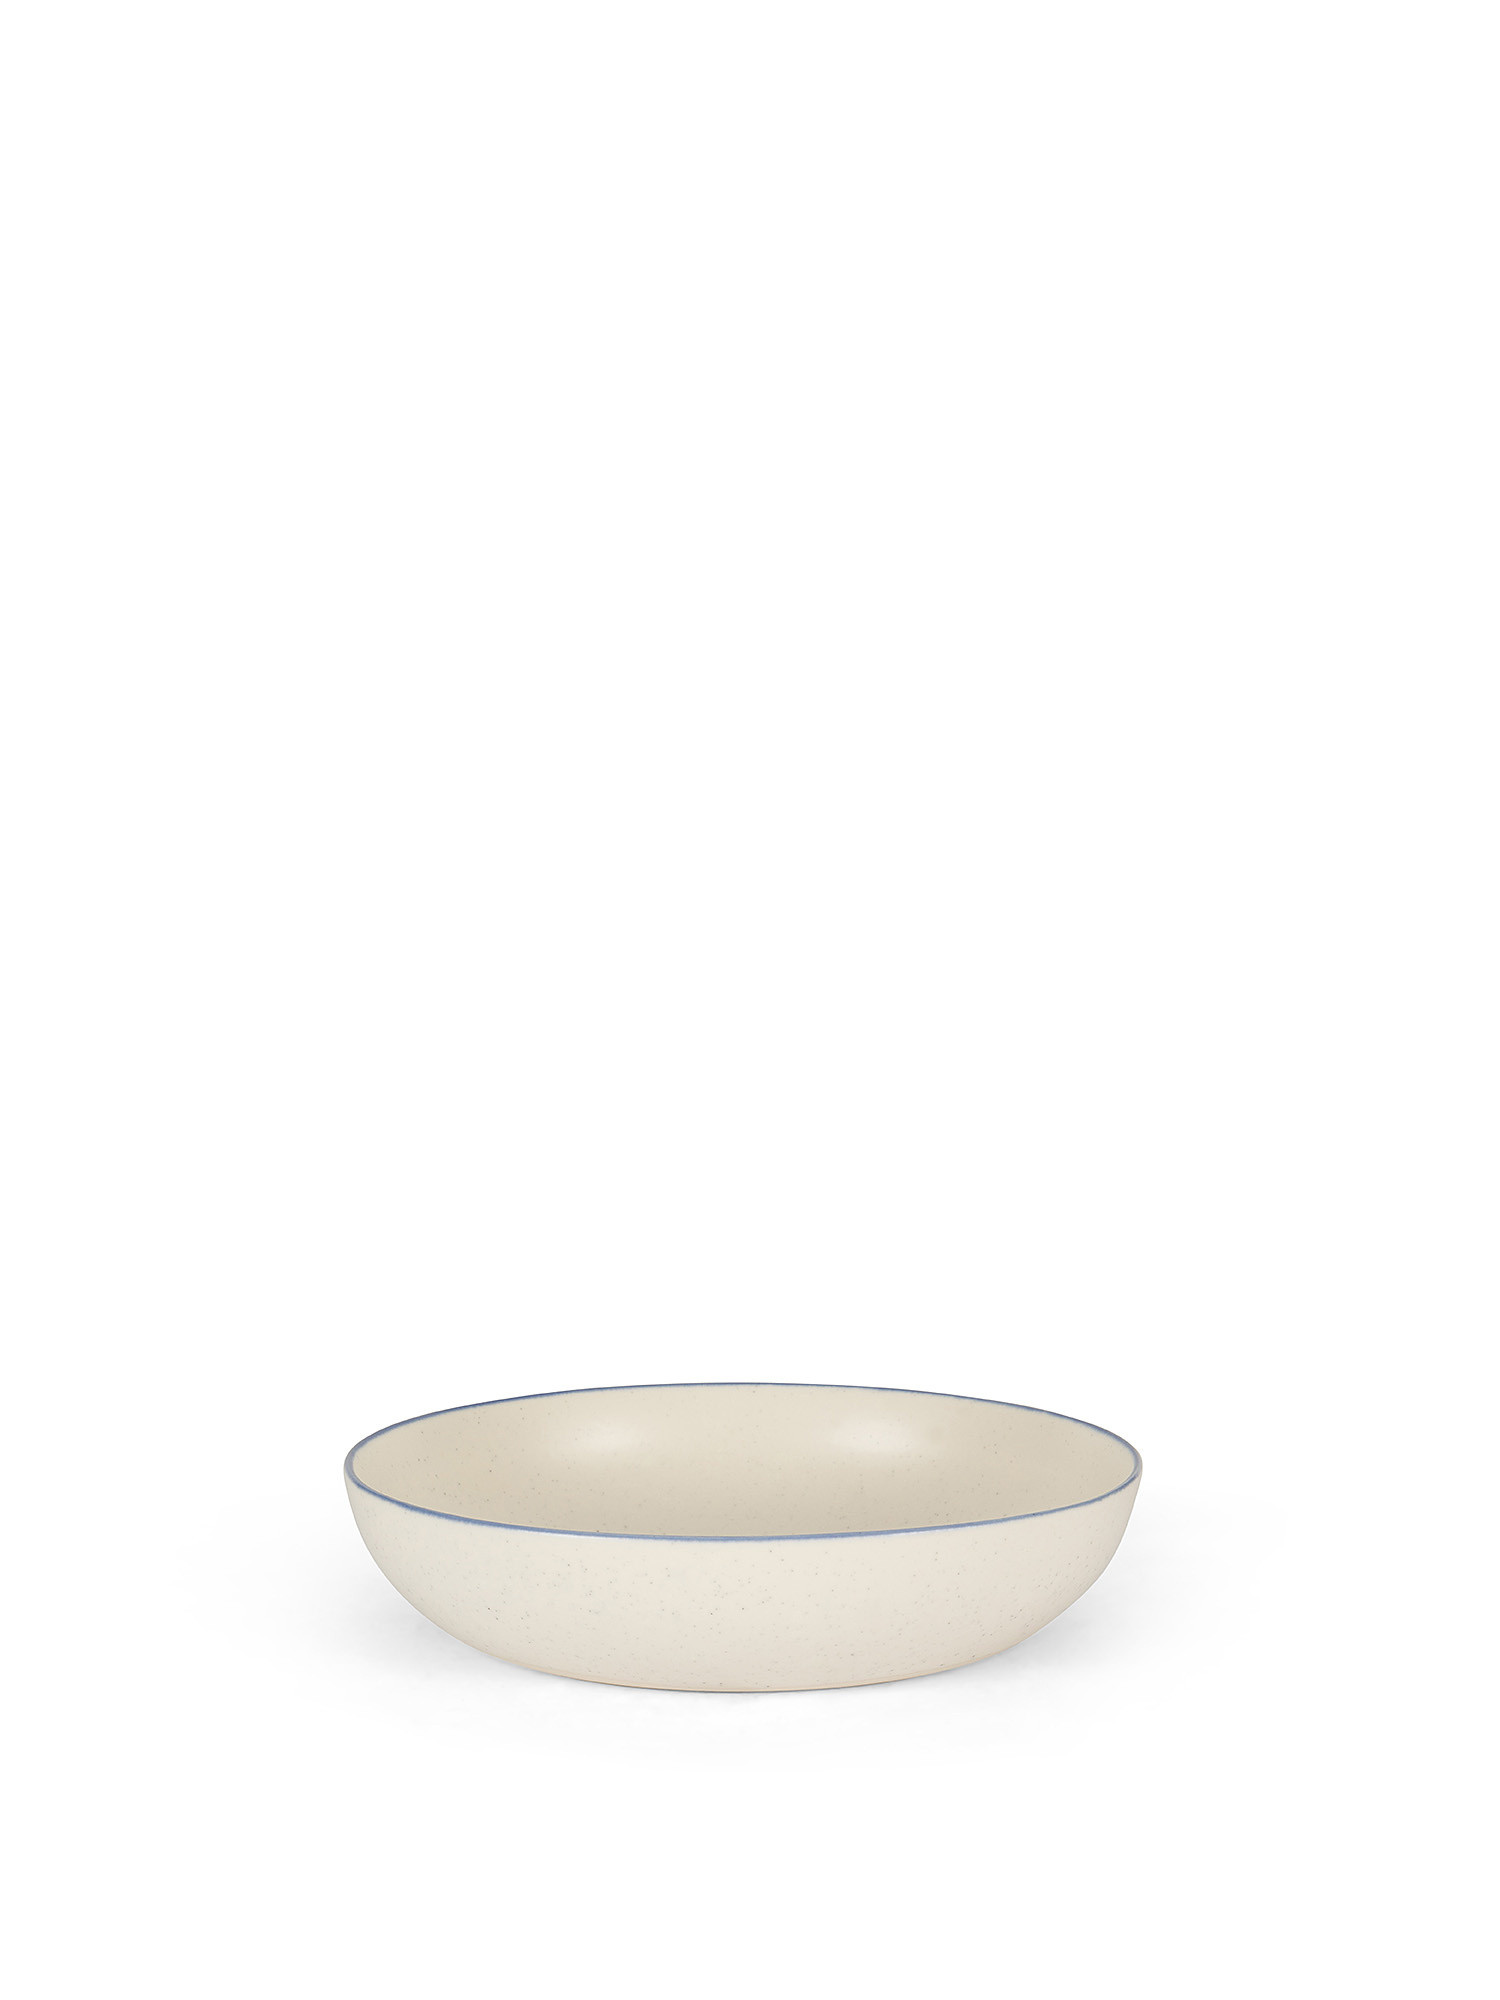 Piatto fondo ceramica con bordino, Bianco, large image number 0